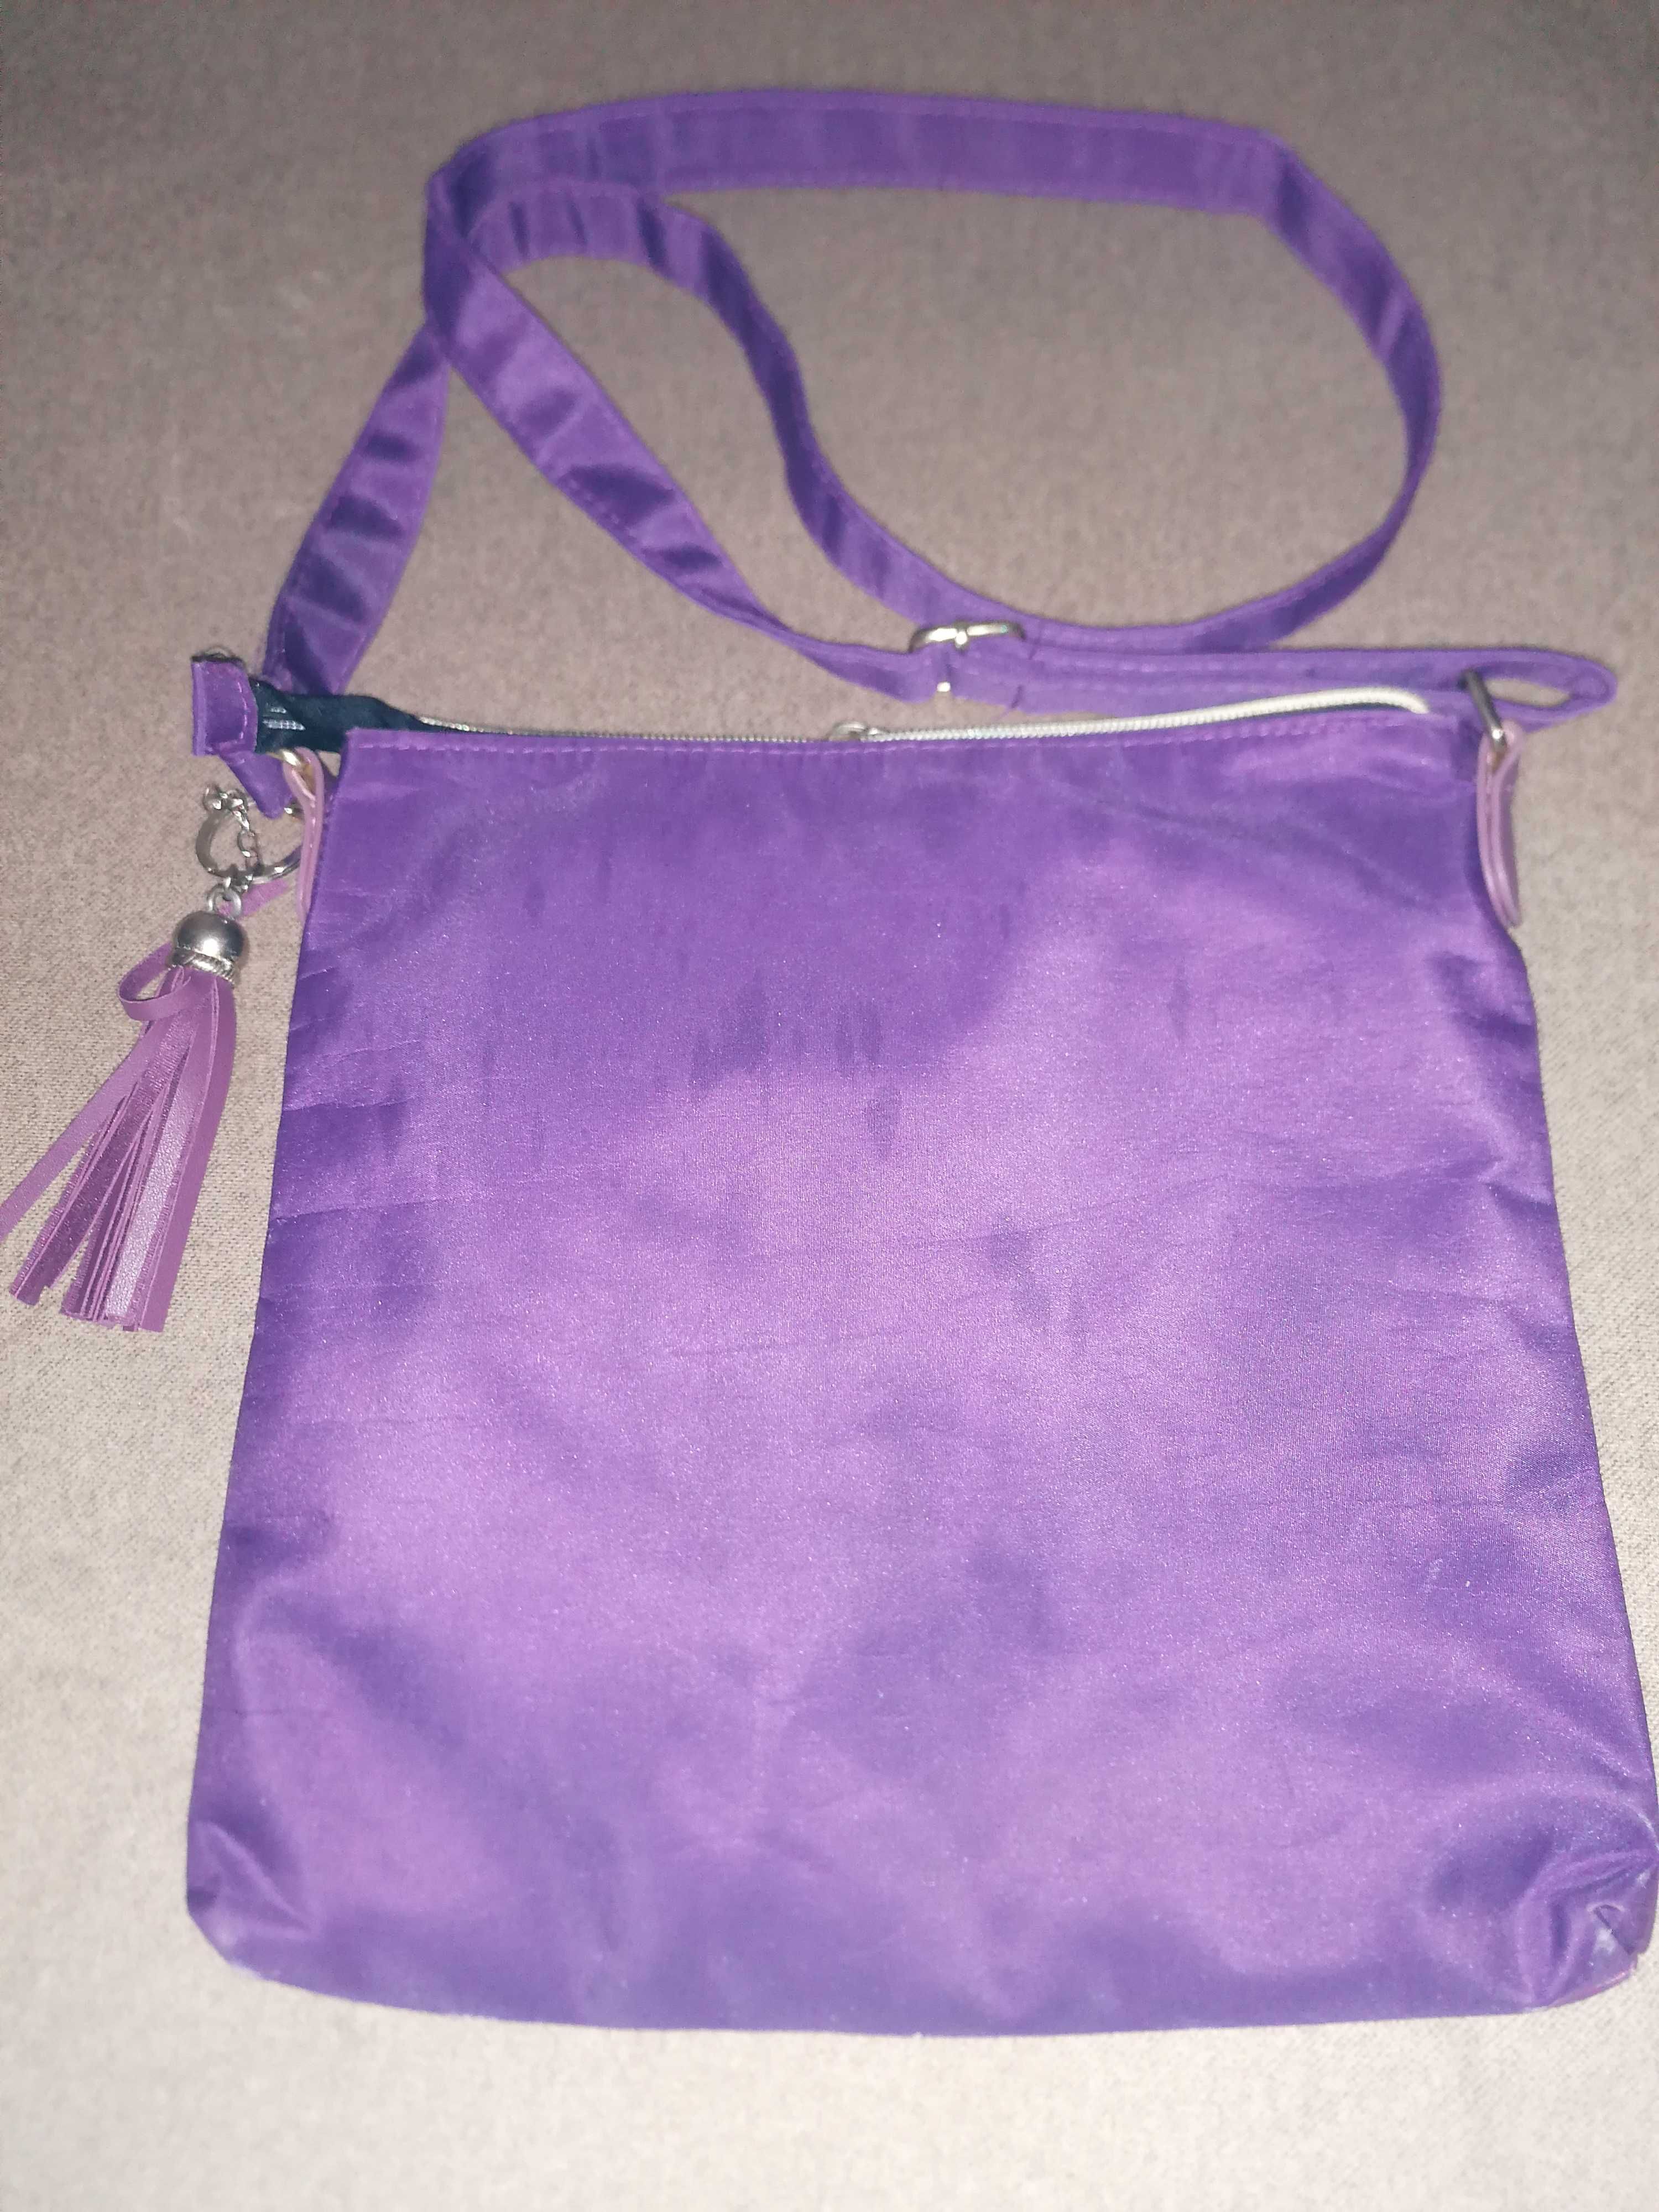 Torba,torebka z paskiem na ramię fioletowa.